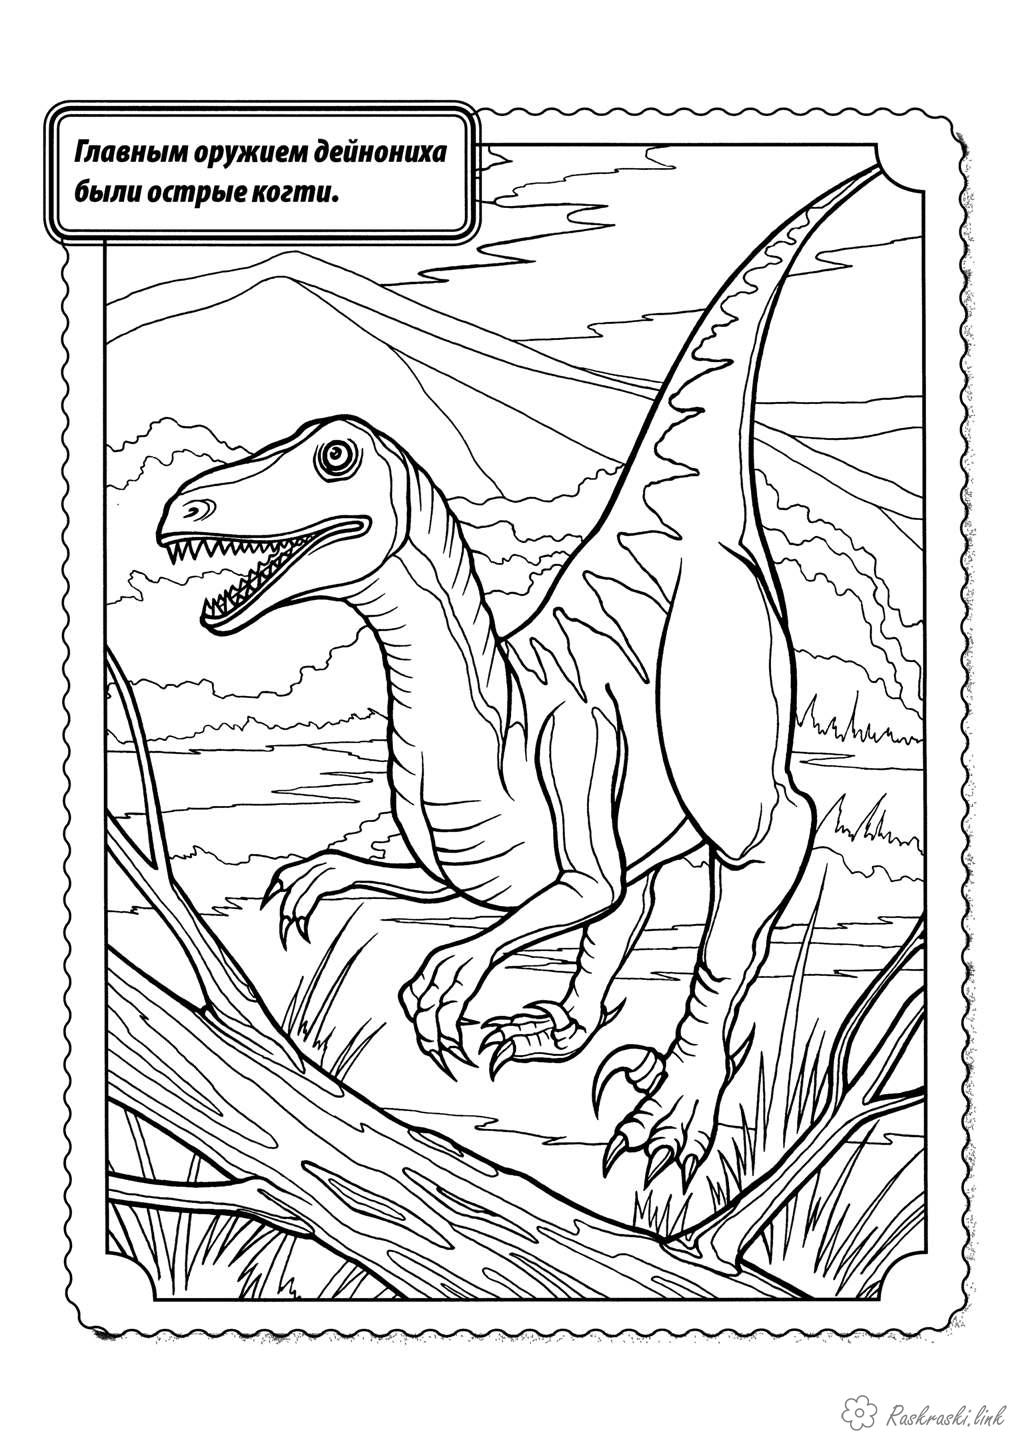 Розмальовки хижак Розмальовка динозавр дейноніх